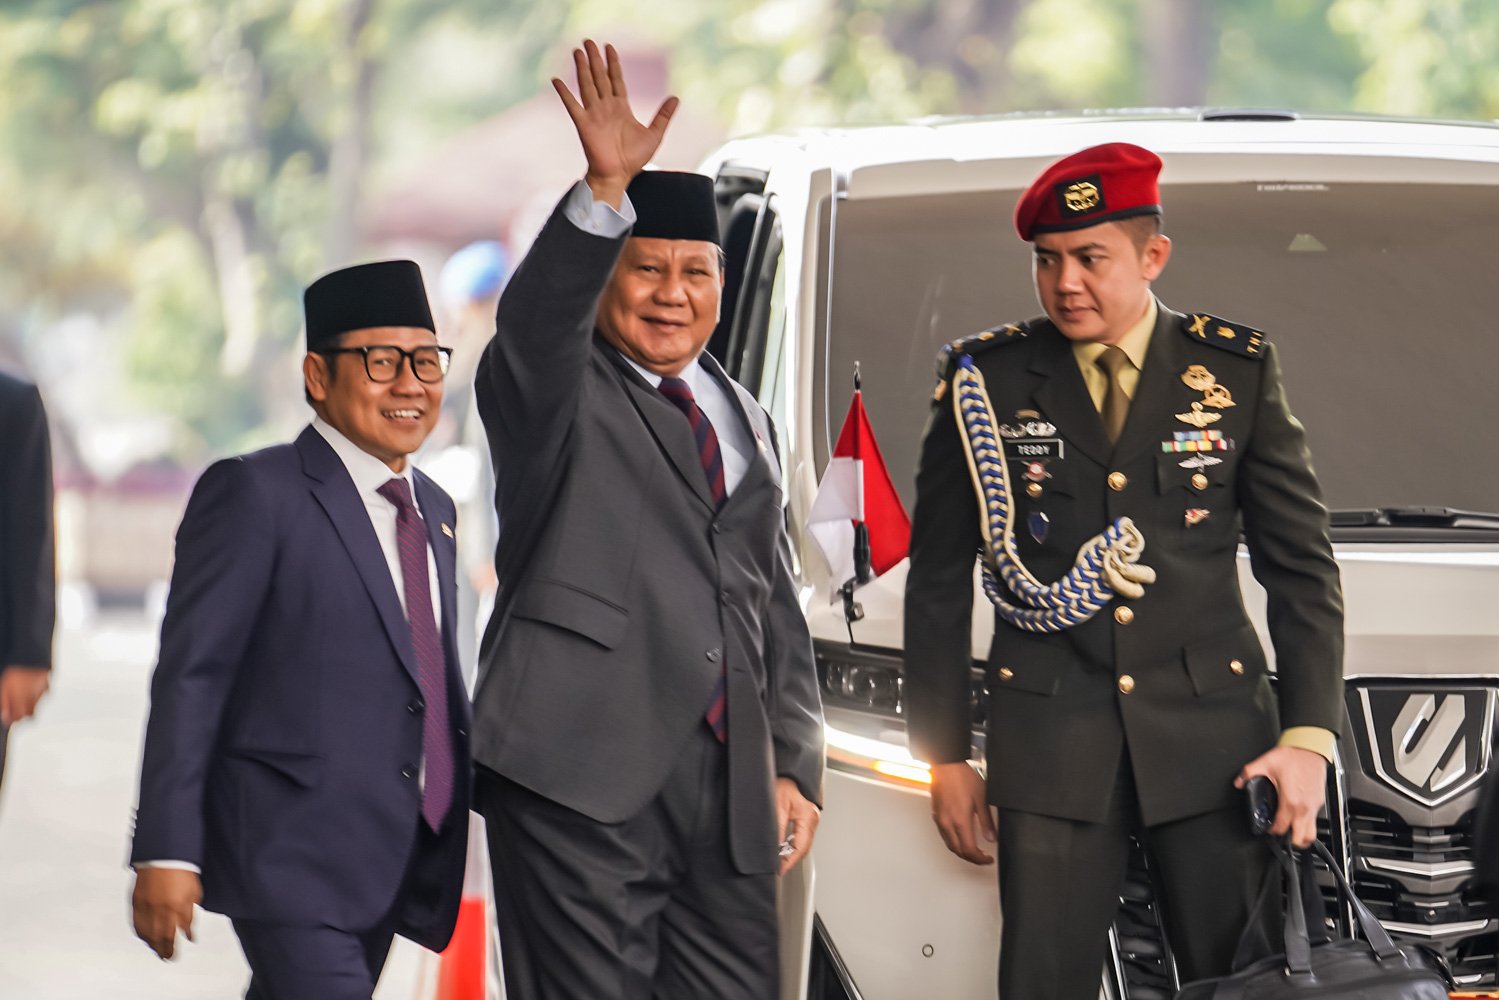 Wakil Ketua Dewan Perwakilan Rakyat (DPR) Muhaimin Iskandar dengan Menteri Pertanahan Prabowo Subianto tiba di gedung DPR/MPR, Rabu (16/8). Sidang Tahunan MPR RI Tahun 2023 yang diselenggarakan dalam satu rangkaian dengan Sidang Bersama DPR RI dan DPD RI di Gedung Nusantara MPR RI.